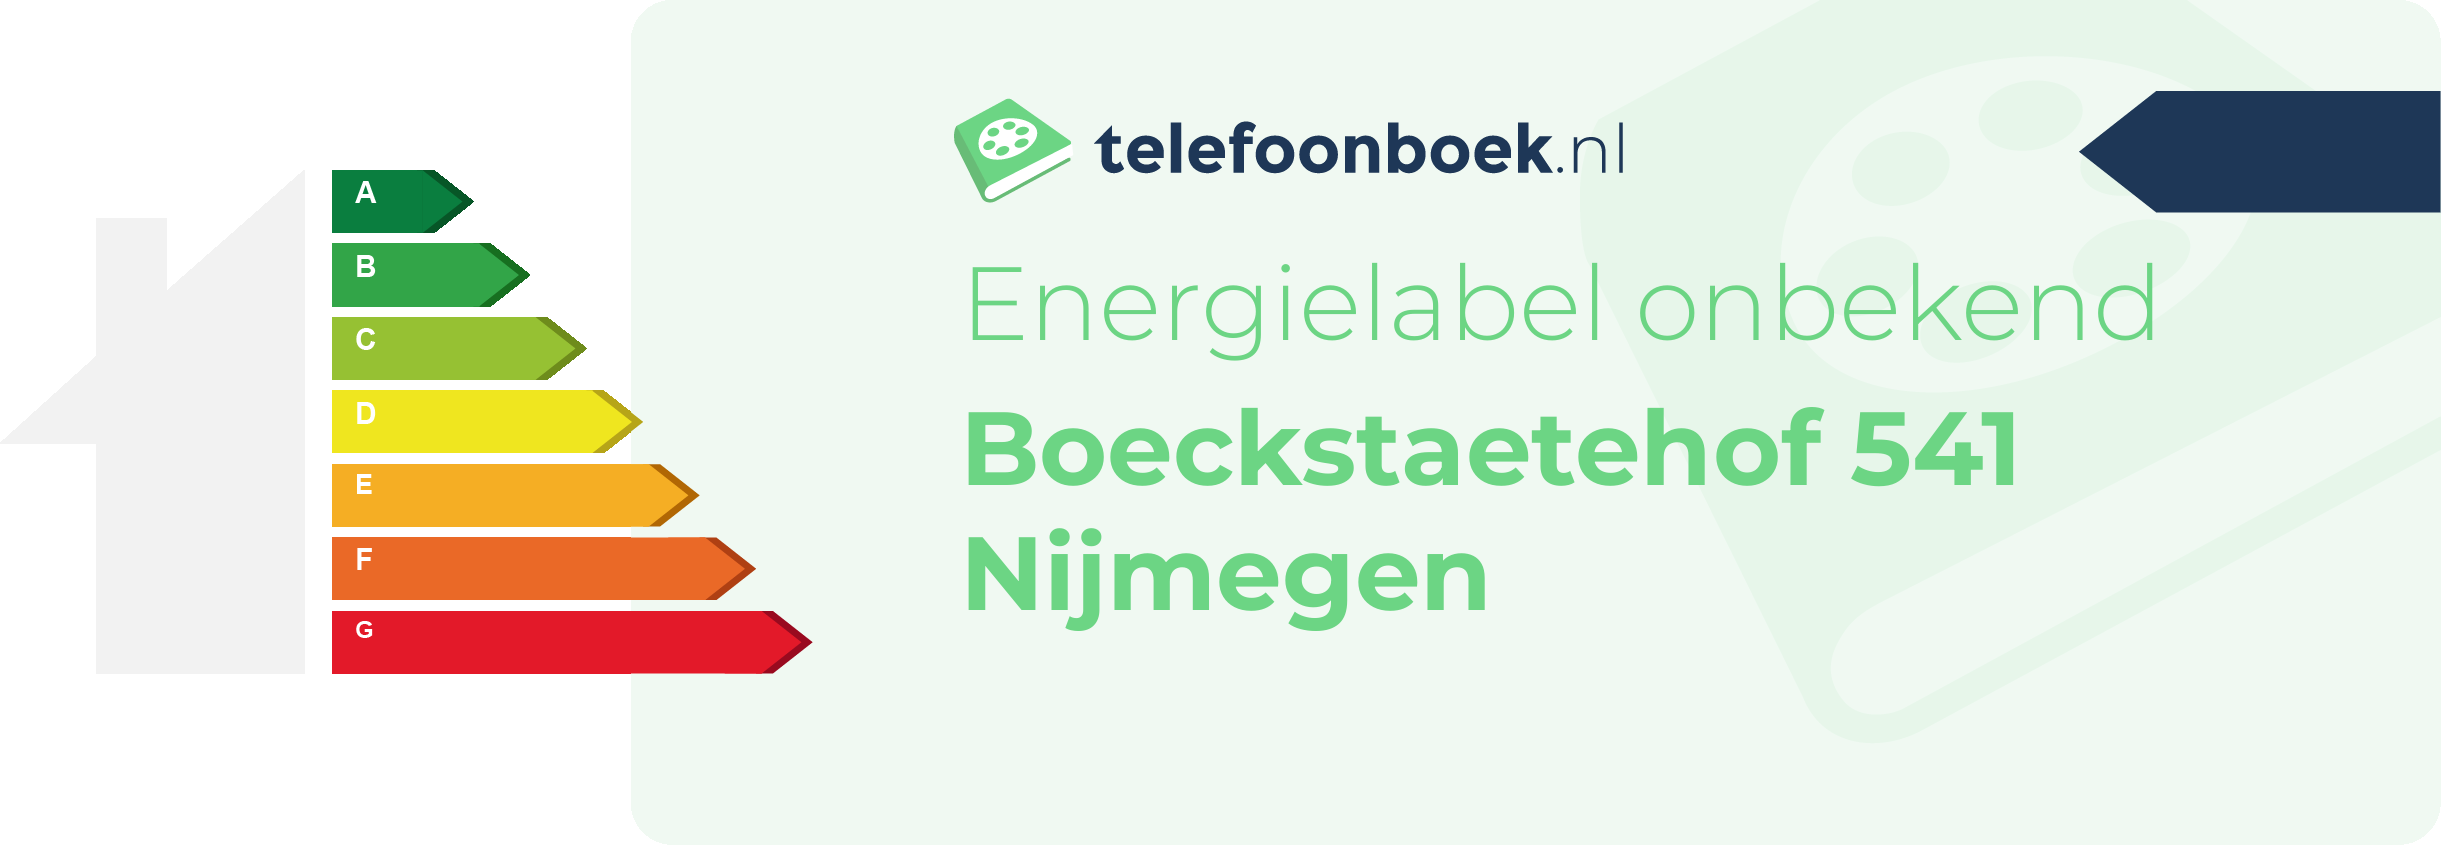 Energielabel Boeckstaetehof 541 Nijmegen